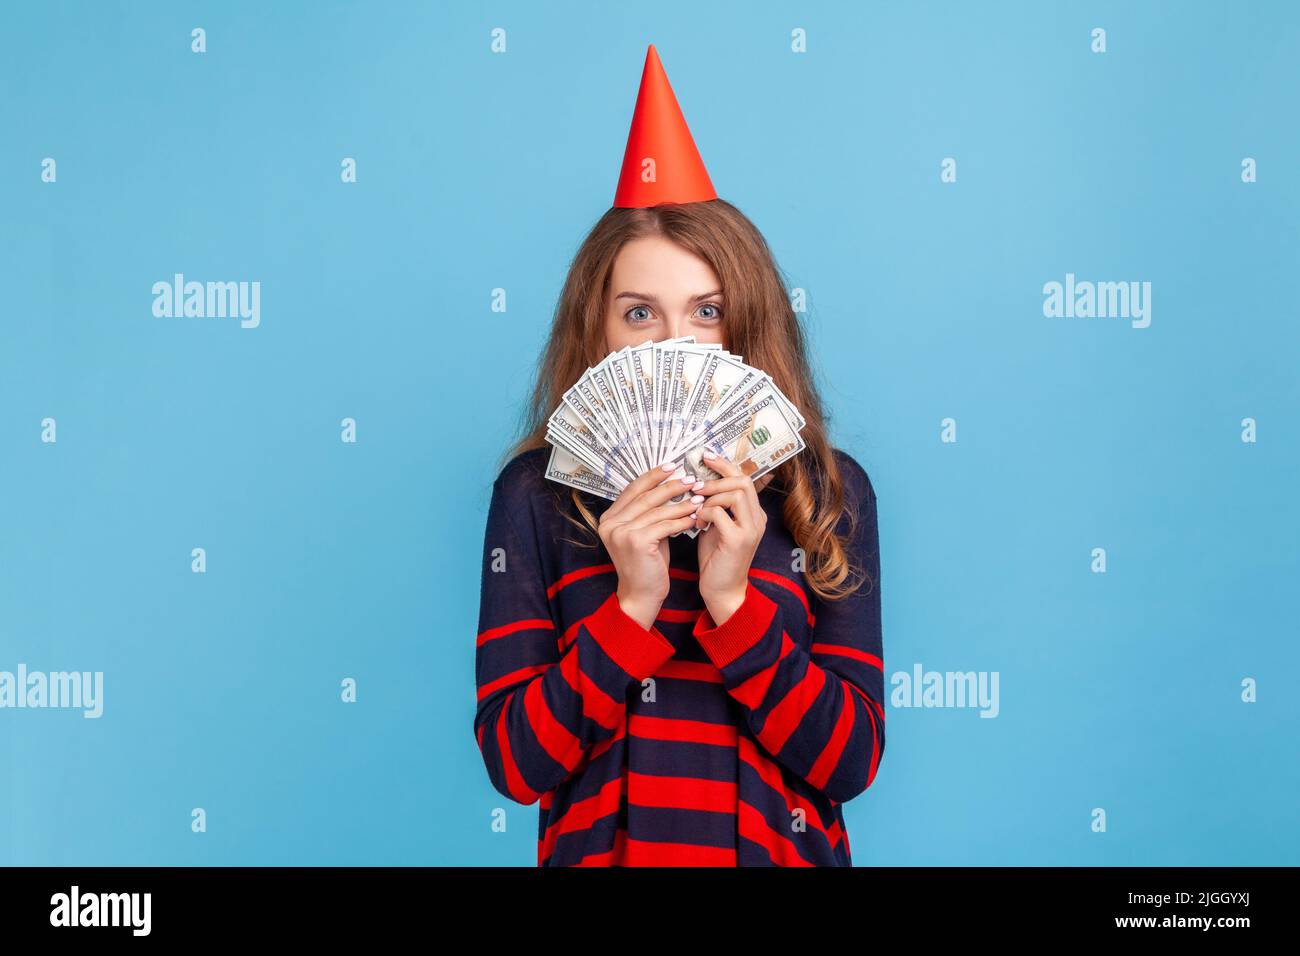 Schüchterne Frau mit gestreiftem Pullover im lässigen Stil und rotem Partykegel, die sich hinter Geldscheinen versteckt, genießt das reiche Leben und ist mit dem Geldgeschenk zufrieden. Innenaufnahme des Studios isoliert auf blauem Hintergrund. Stockfoto